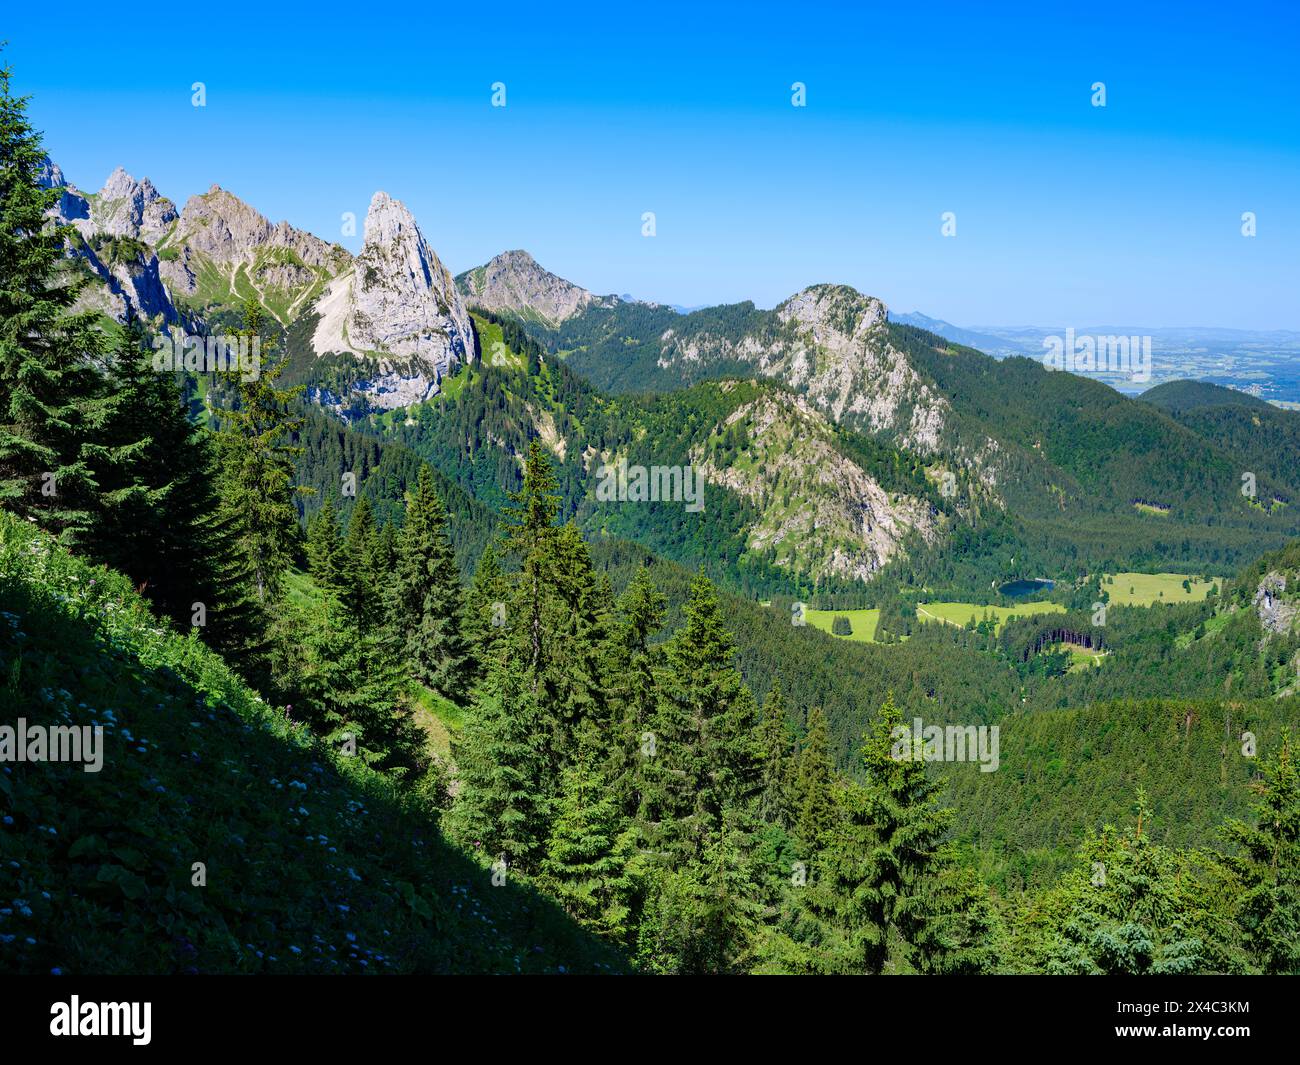 Vista verso il monte Geiselstein e le zone umide di Kenzenmoos. Parco naturale delle Alpi Ammergau (Ammergau Alpen) nelle Alpi calcaree settentrionali dell'alta Baviera, Germania. Foto Stock